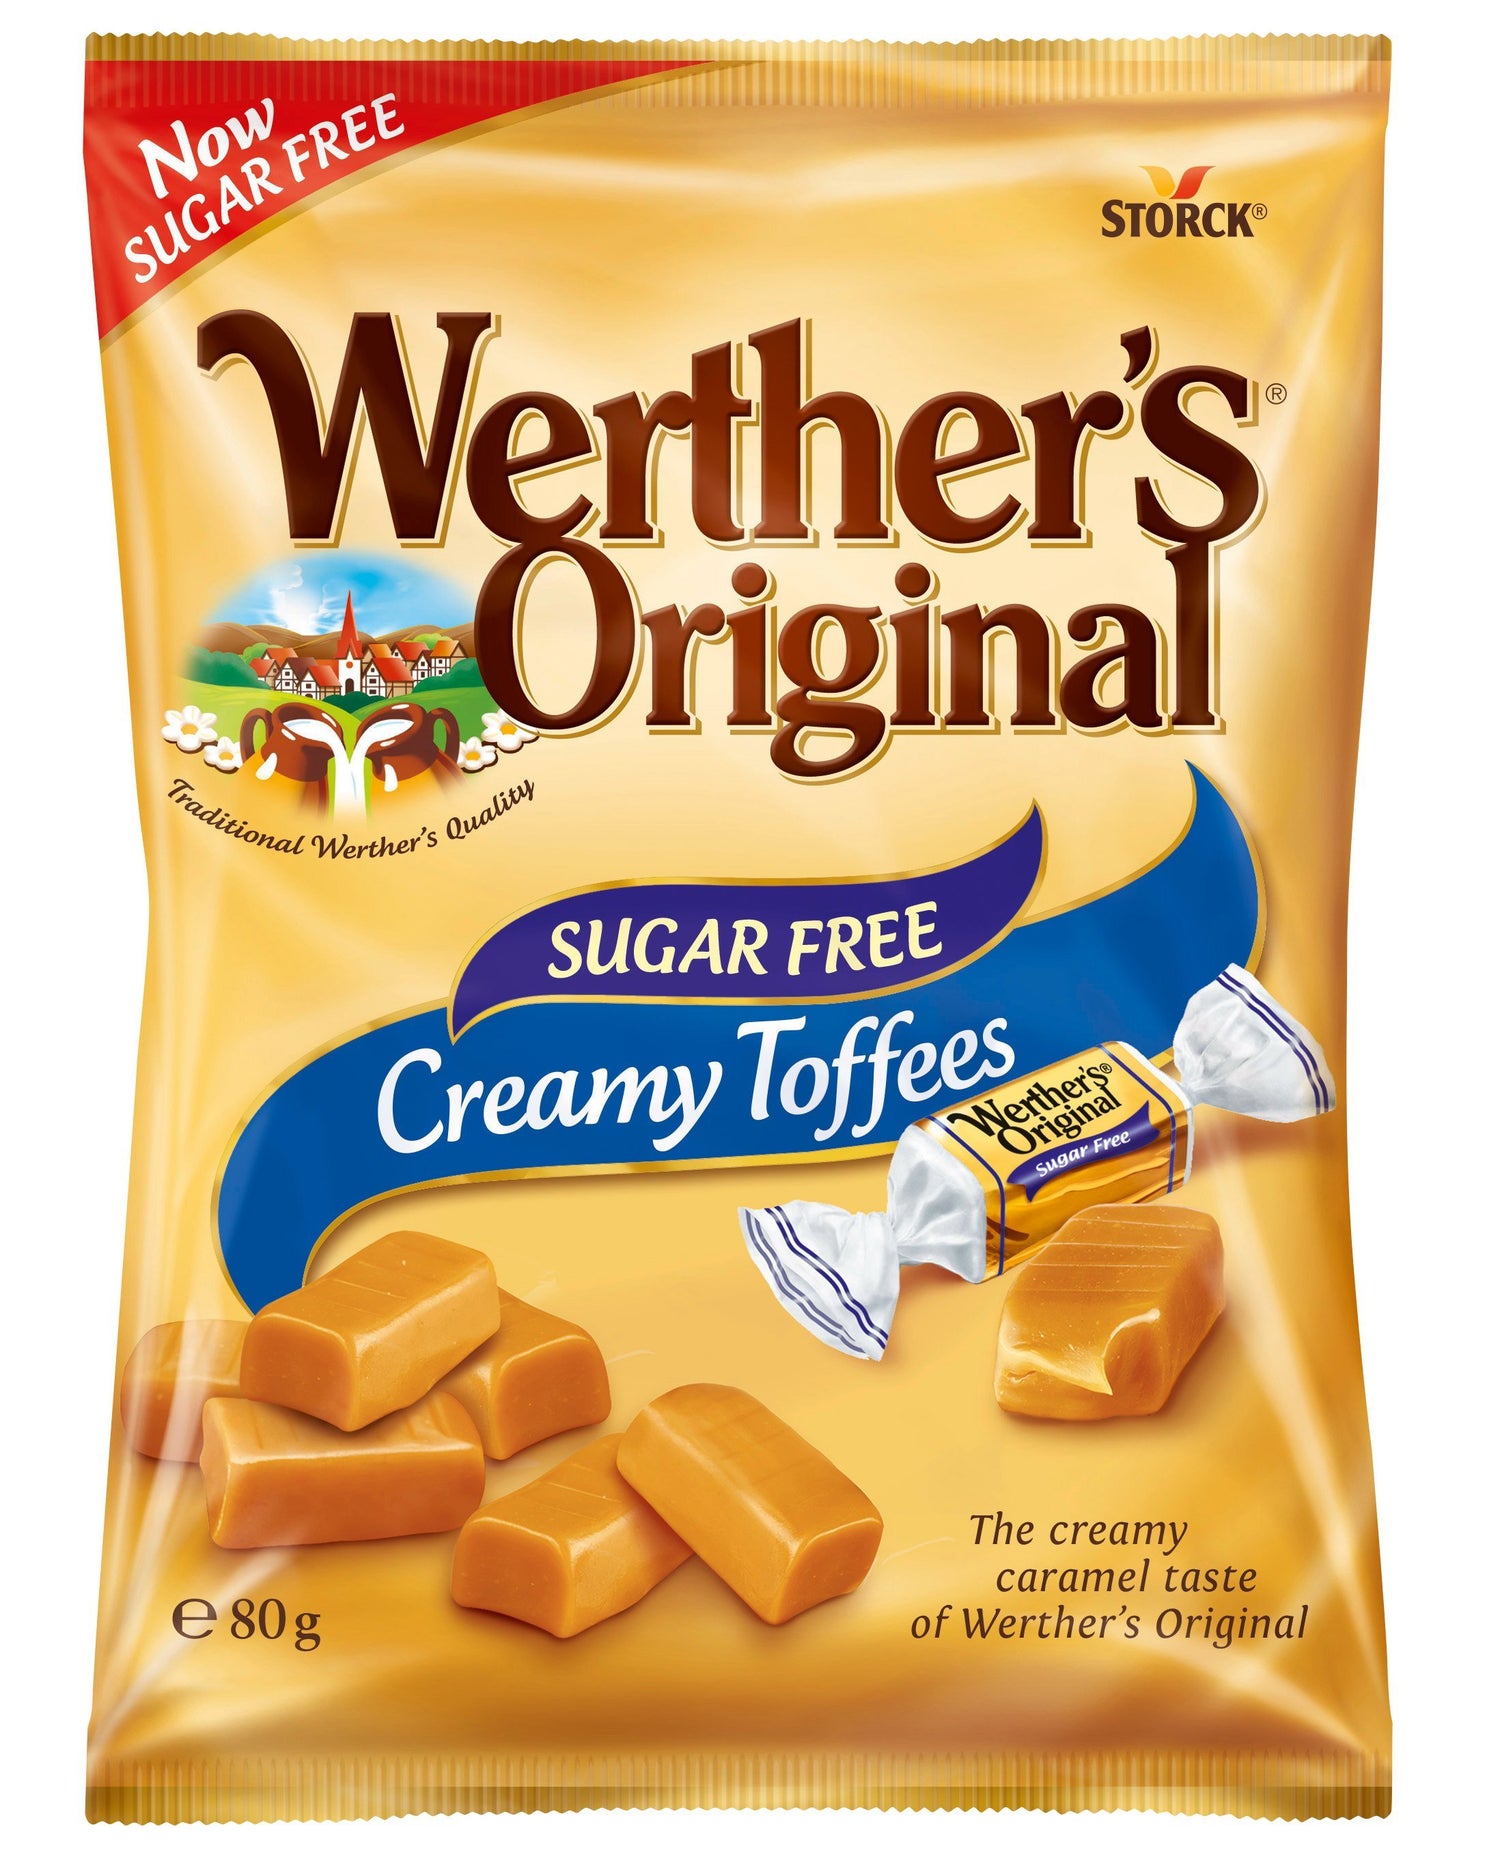 Werther's Original zuckerfreie cremige Toffees - theskinnyfoodco